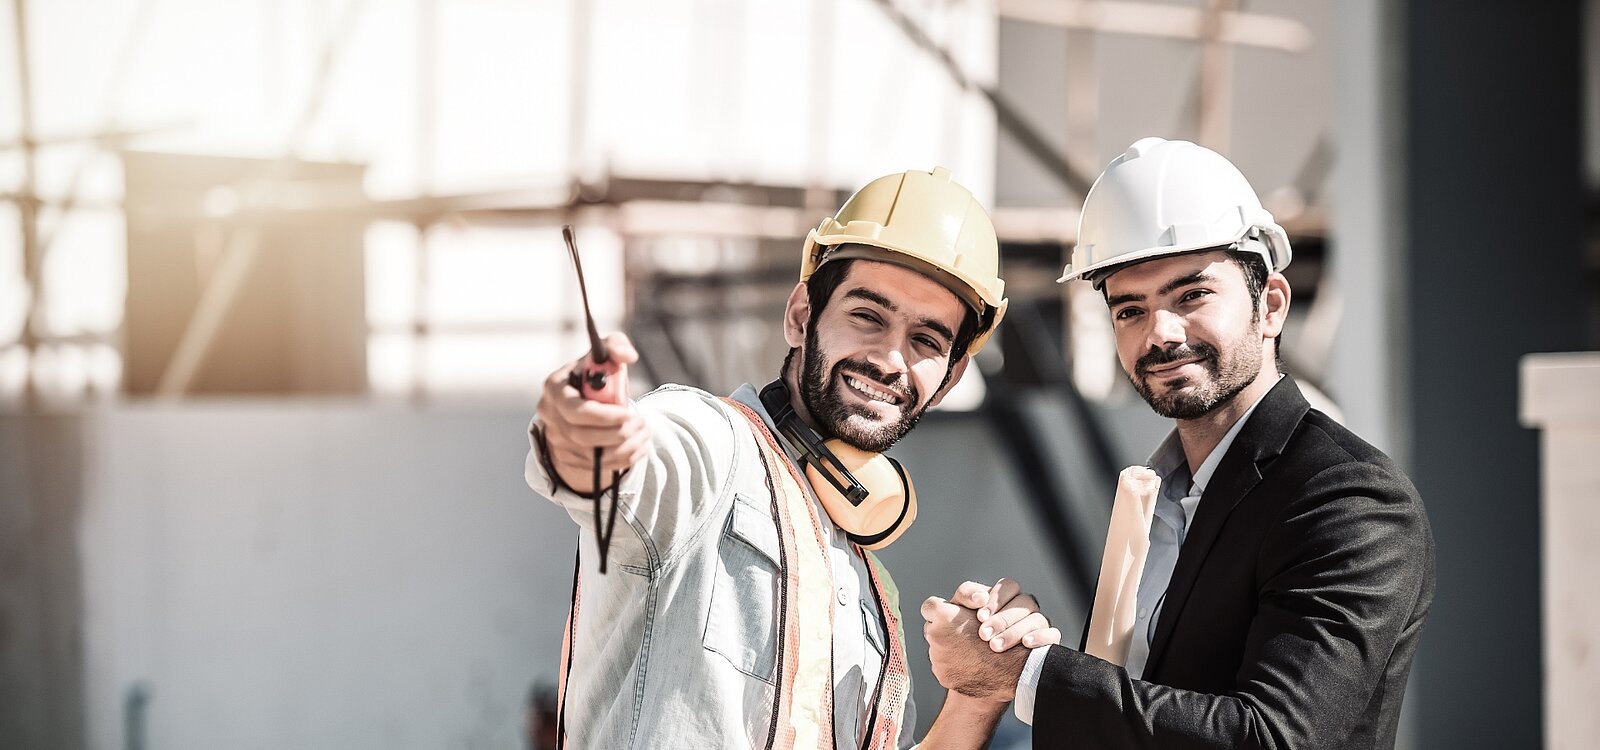 Abbildung: Impressum - zwei junge Handwerker mit Schutzhelmen auf der Baustelle